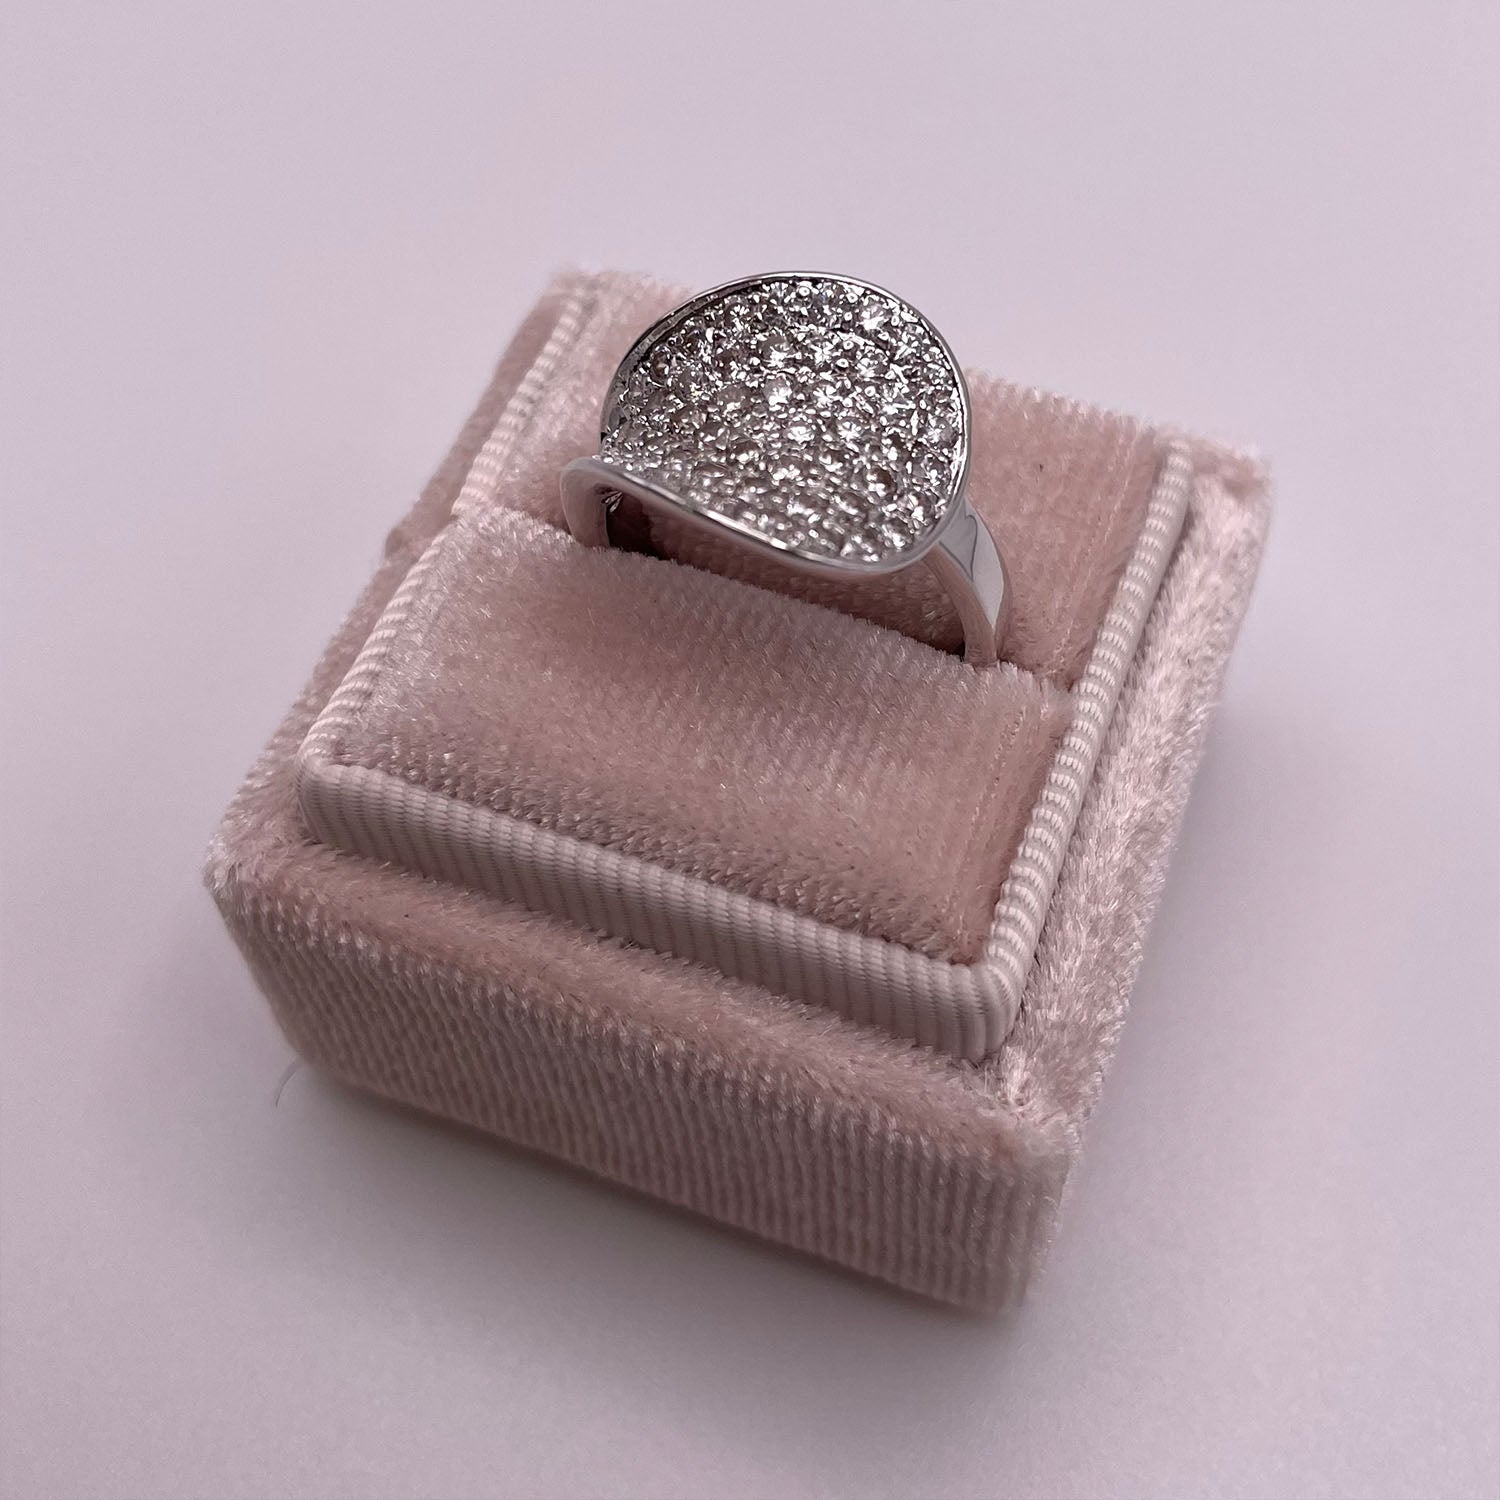 Nelly Round CZ Diamond Statement Ring, Silver - Zahra Jewelry